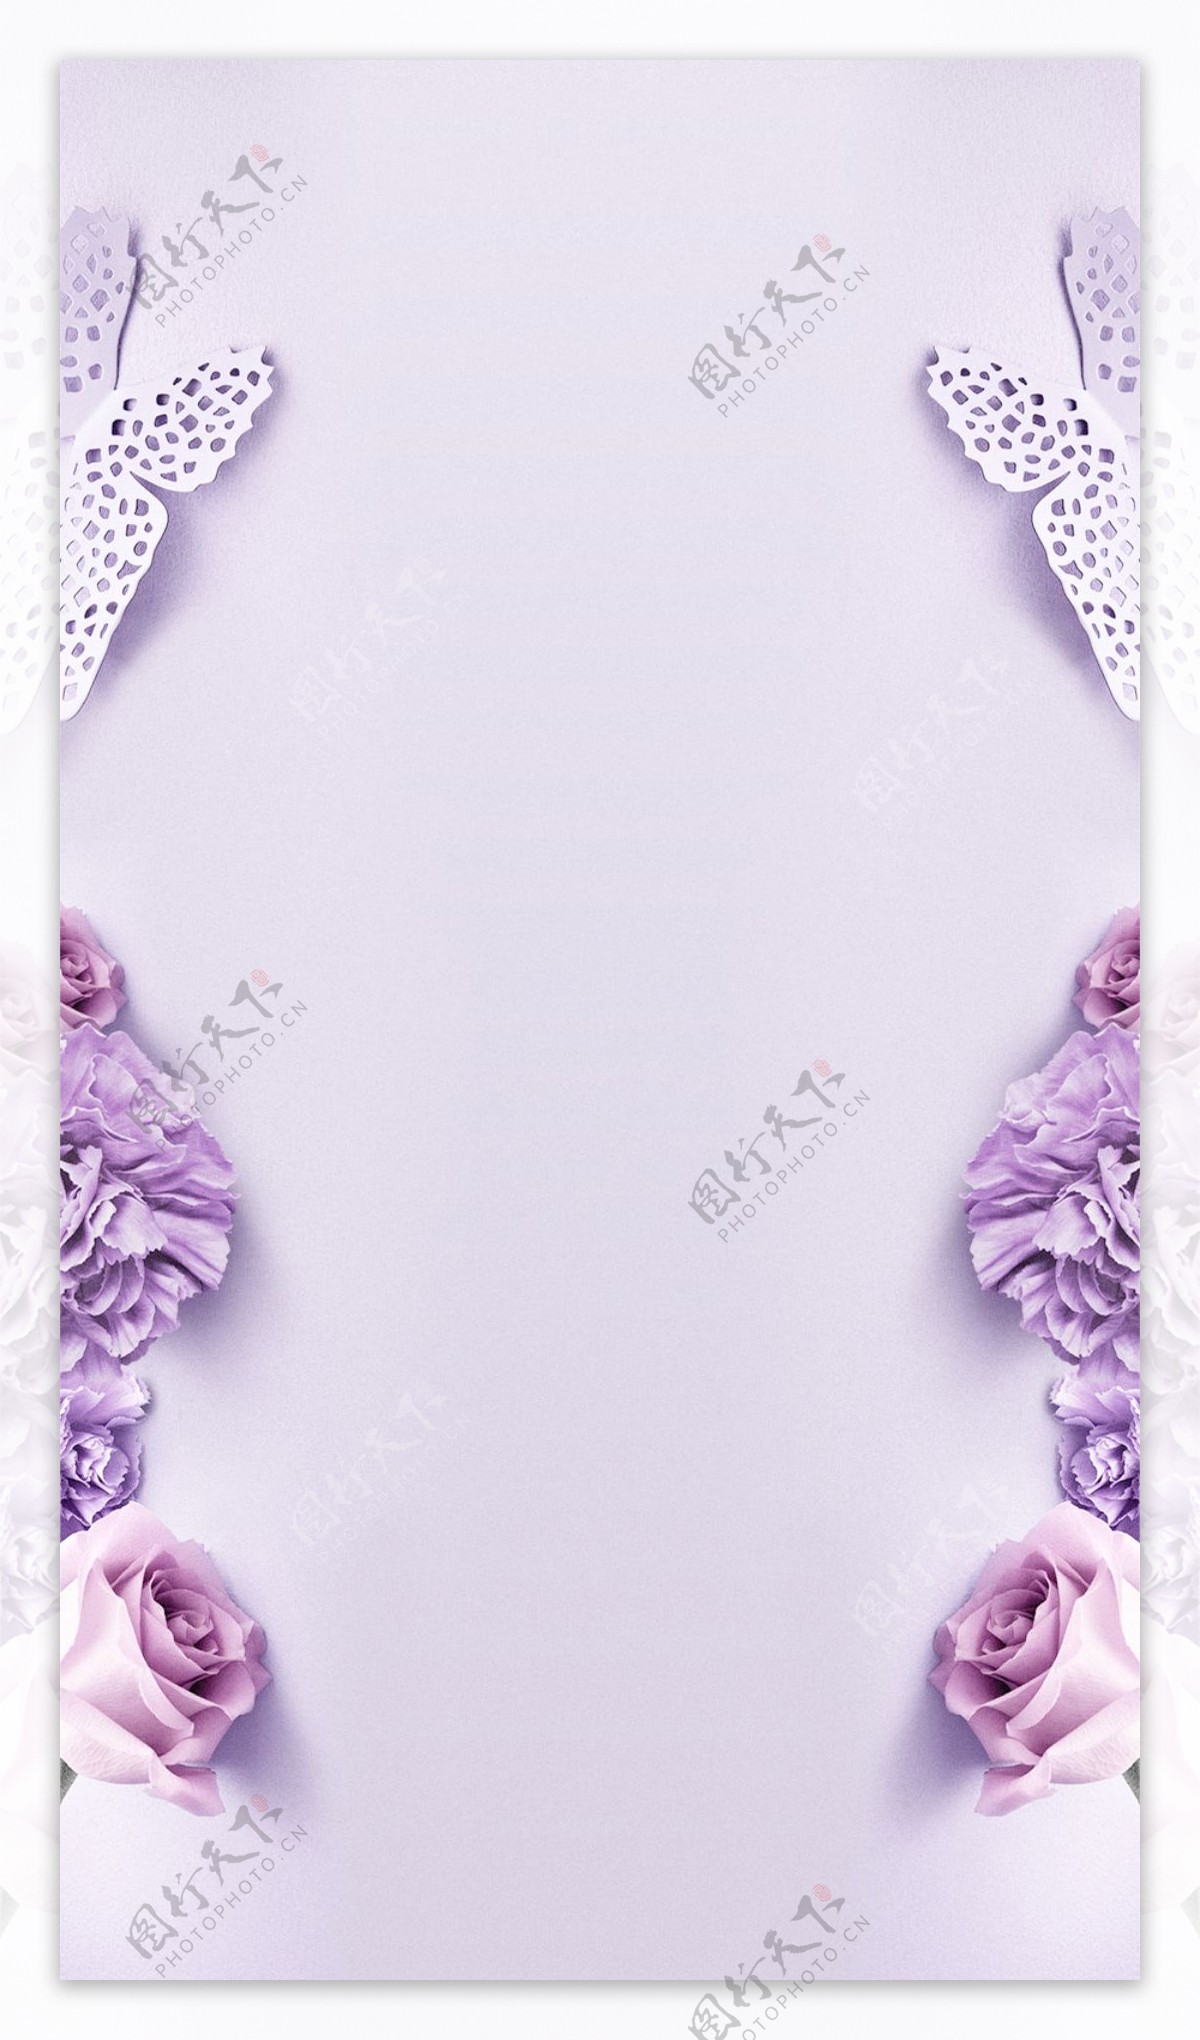 紫色花朵H5背景素材